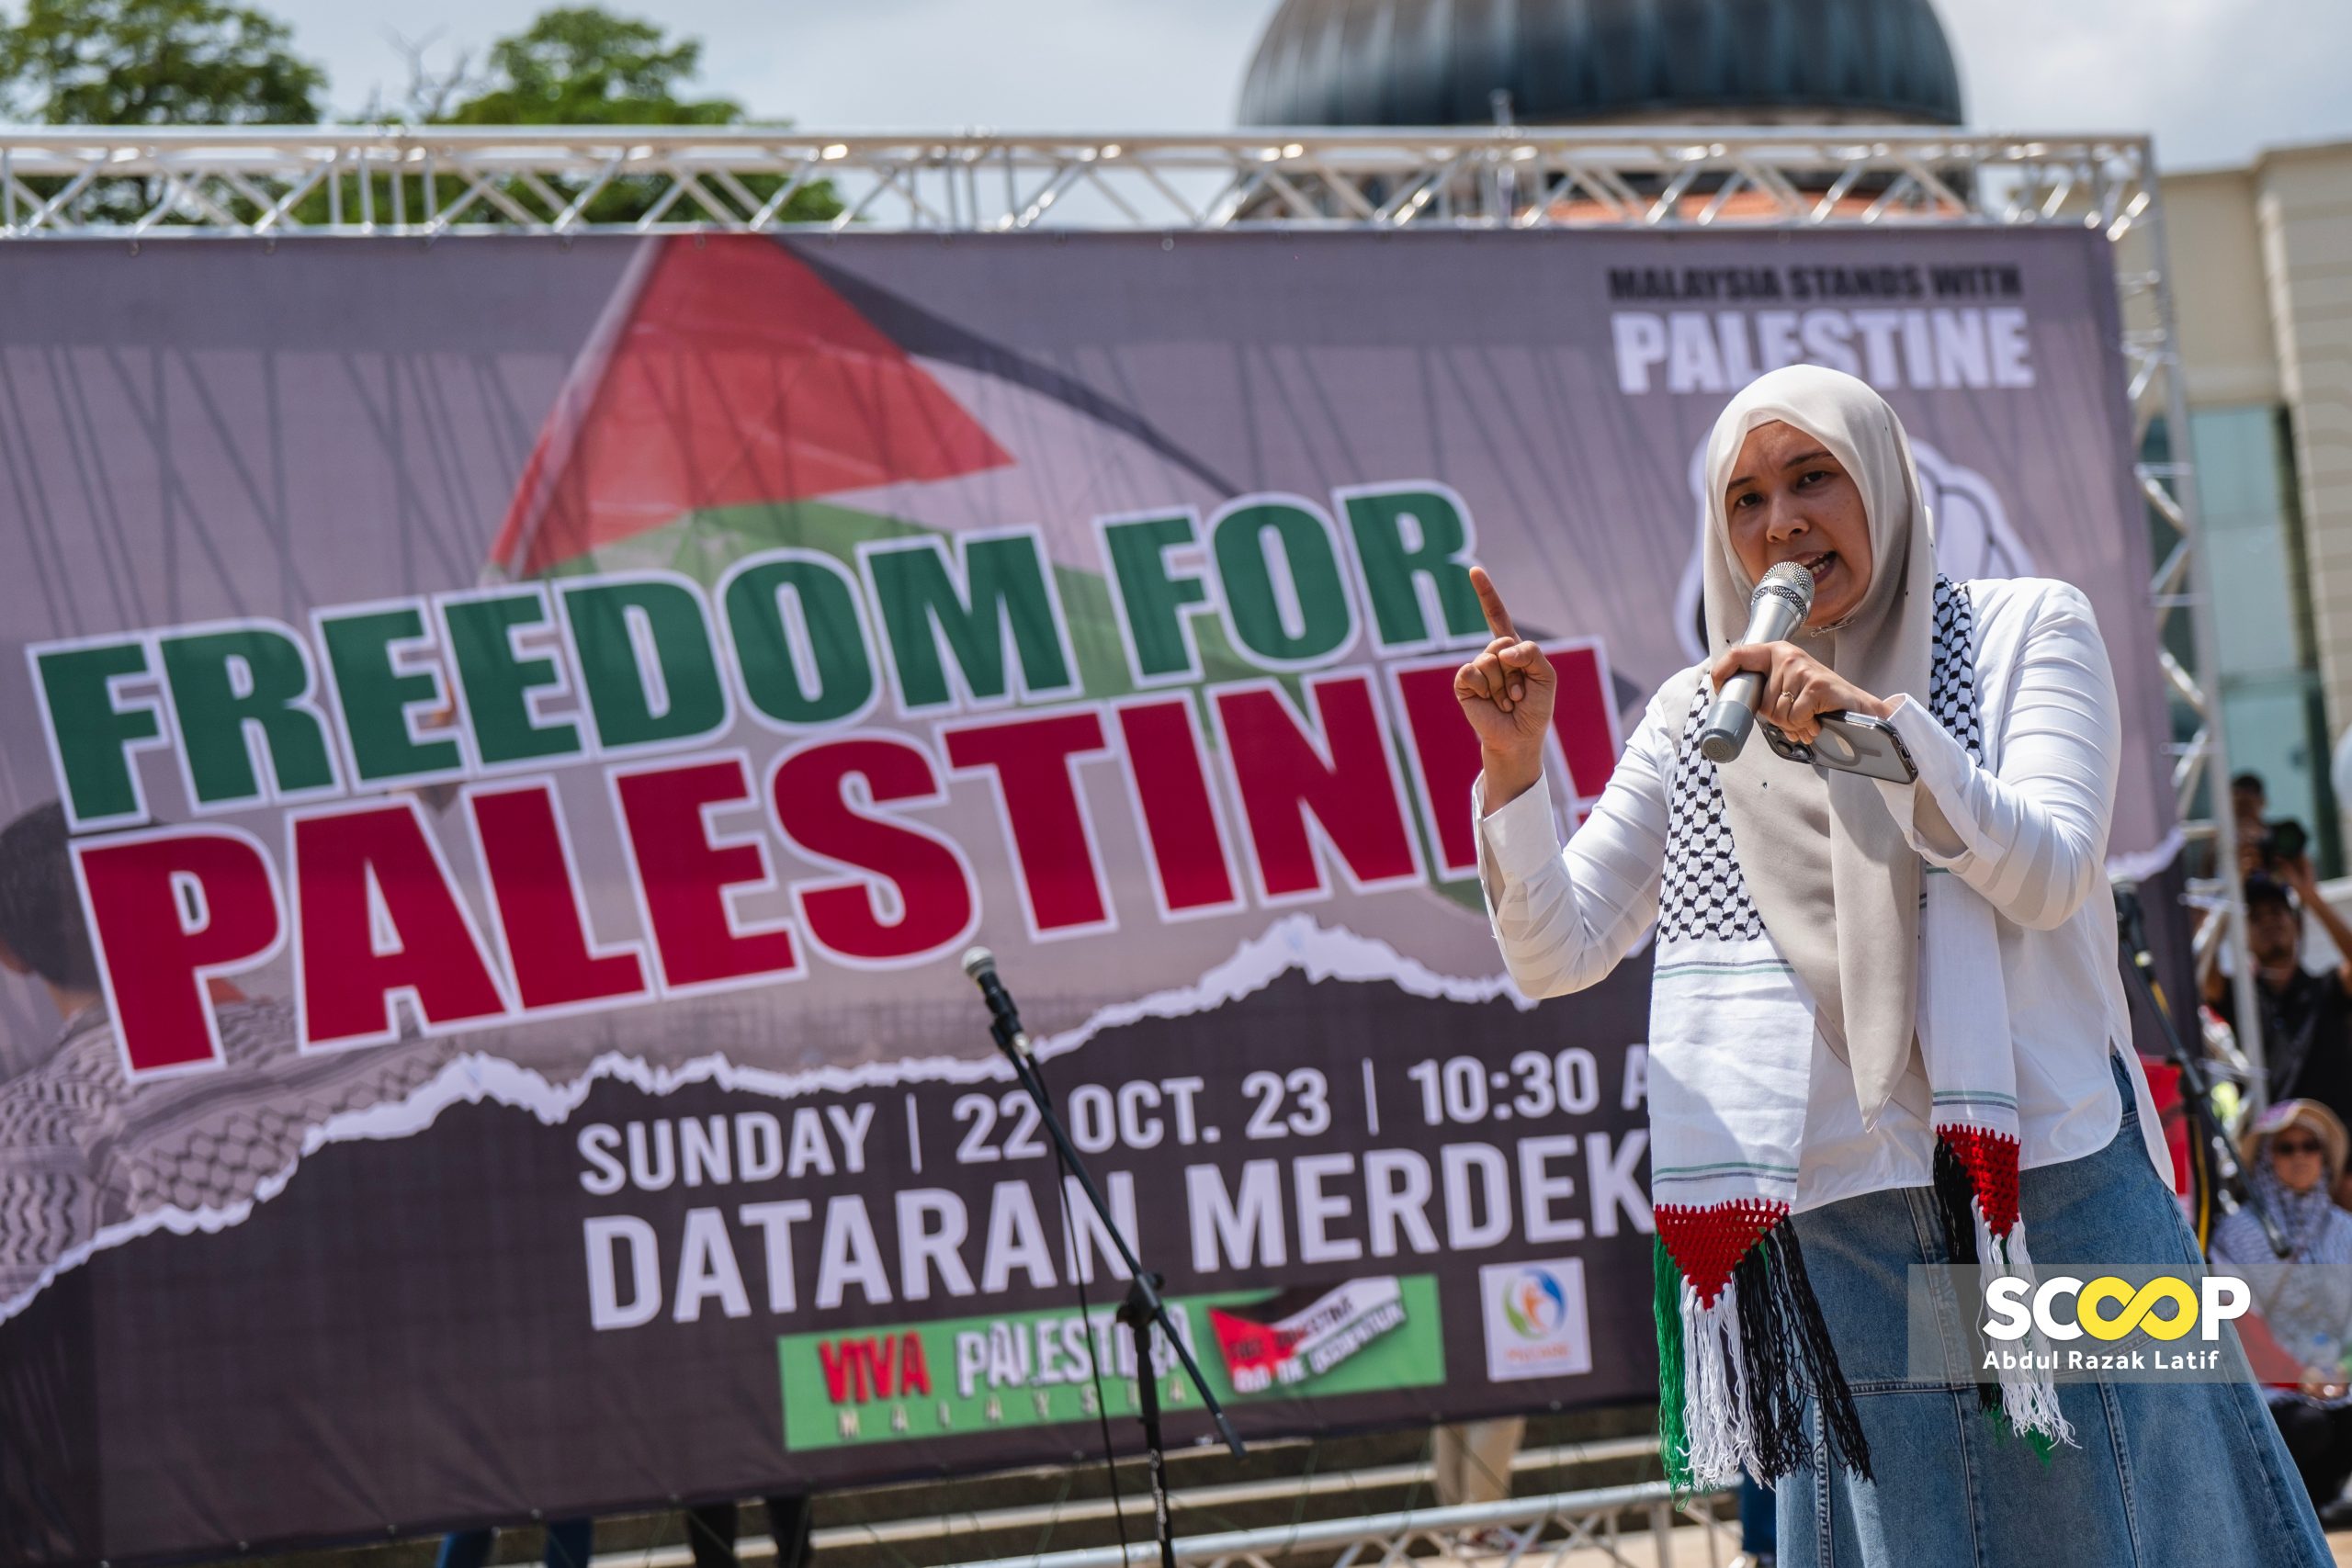 Violence begets violence: Nurul Izzah calls for delegitimisation, defunding of Israel